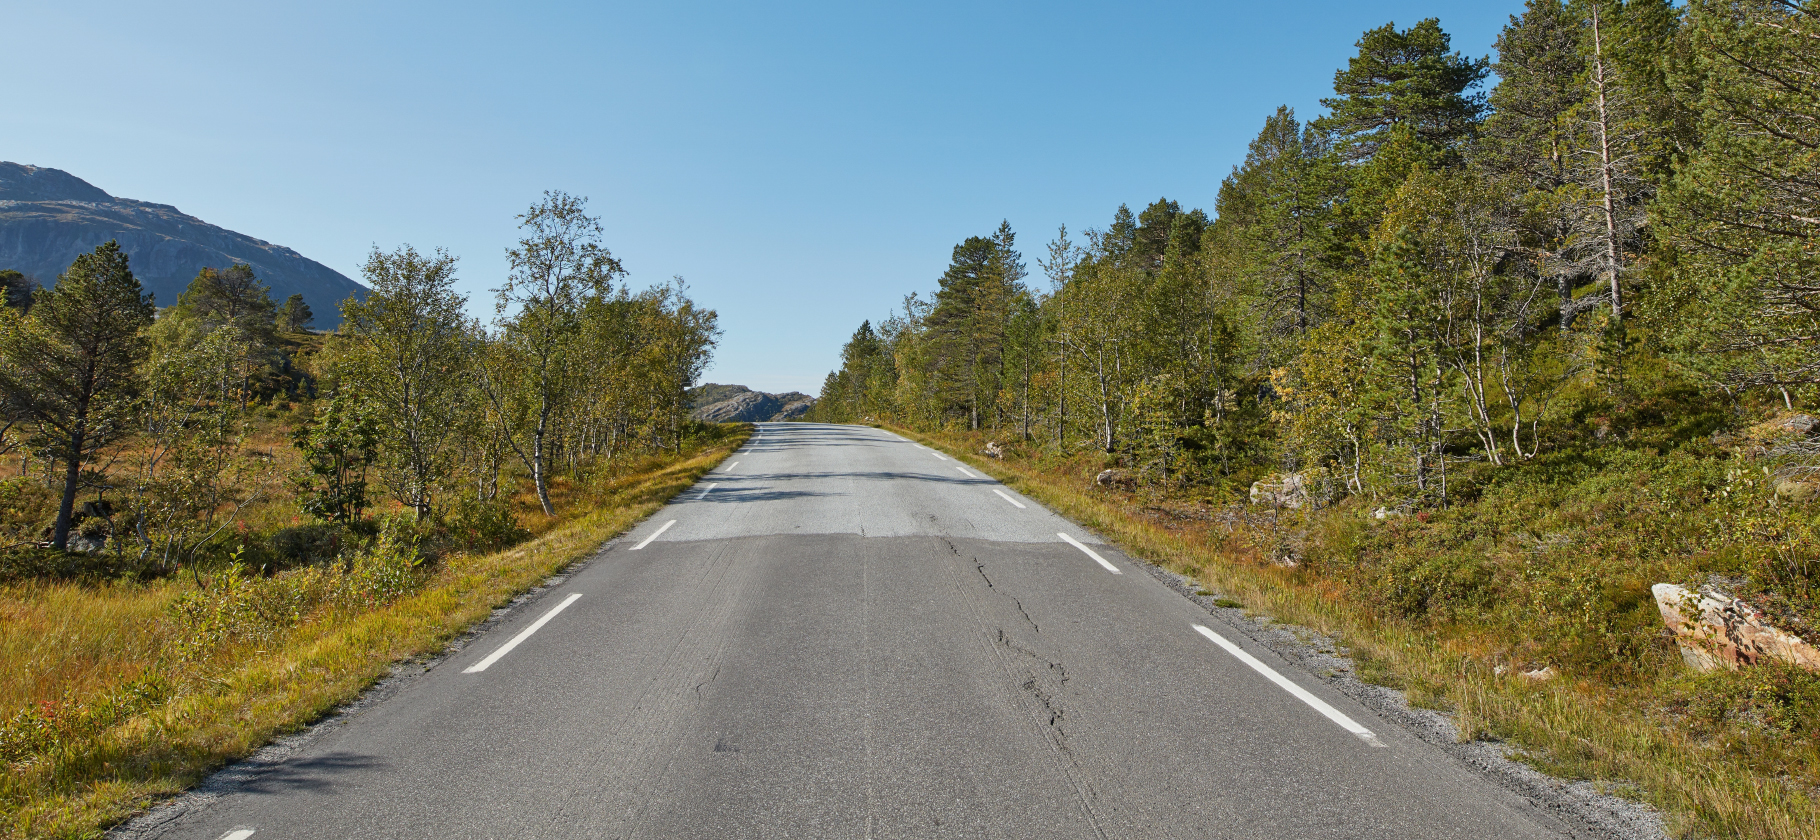 СМИ пишут, что граница Норвегии и России закрылась. Но это не так